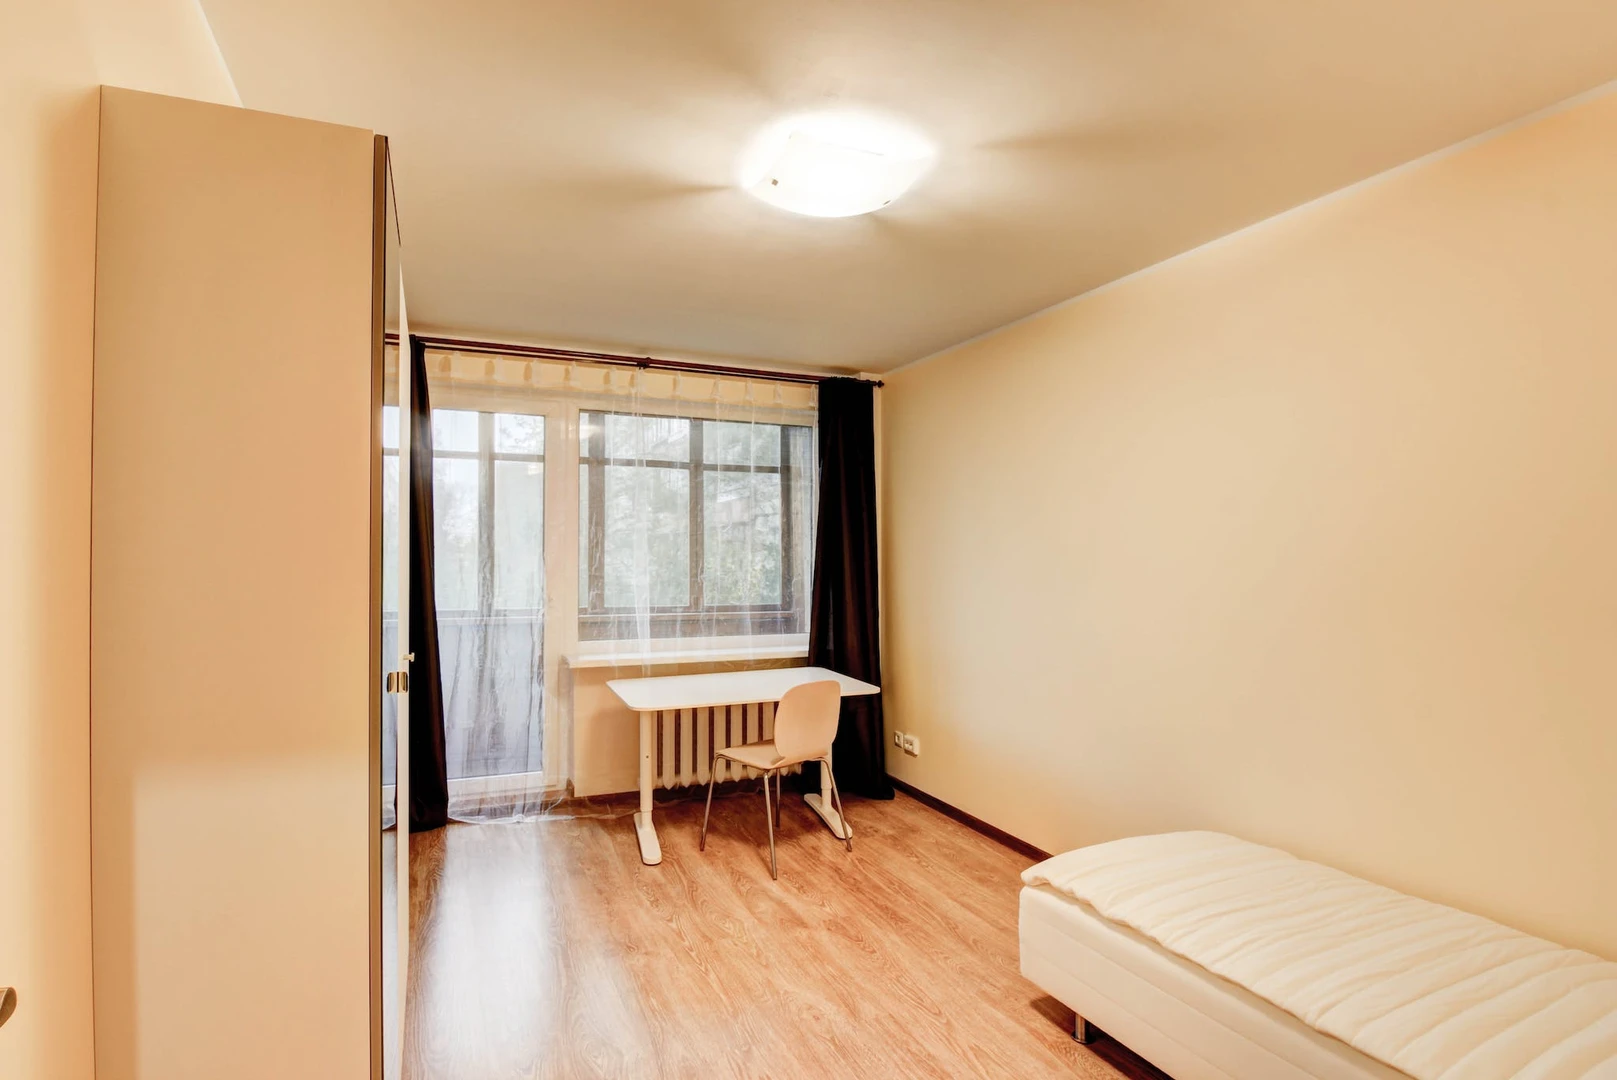 Alquiler de habitación en piso compartido en Vilna